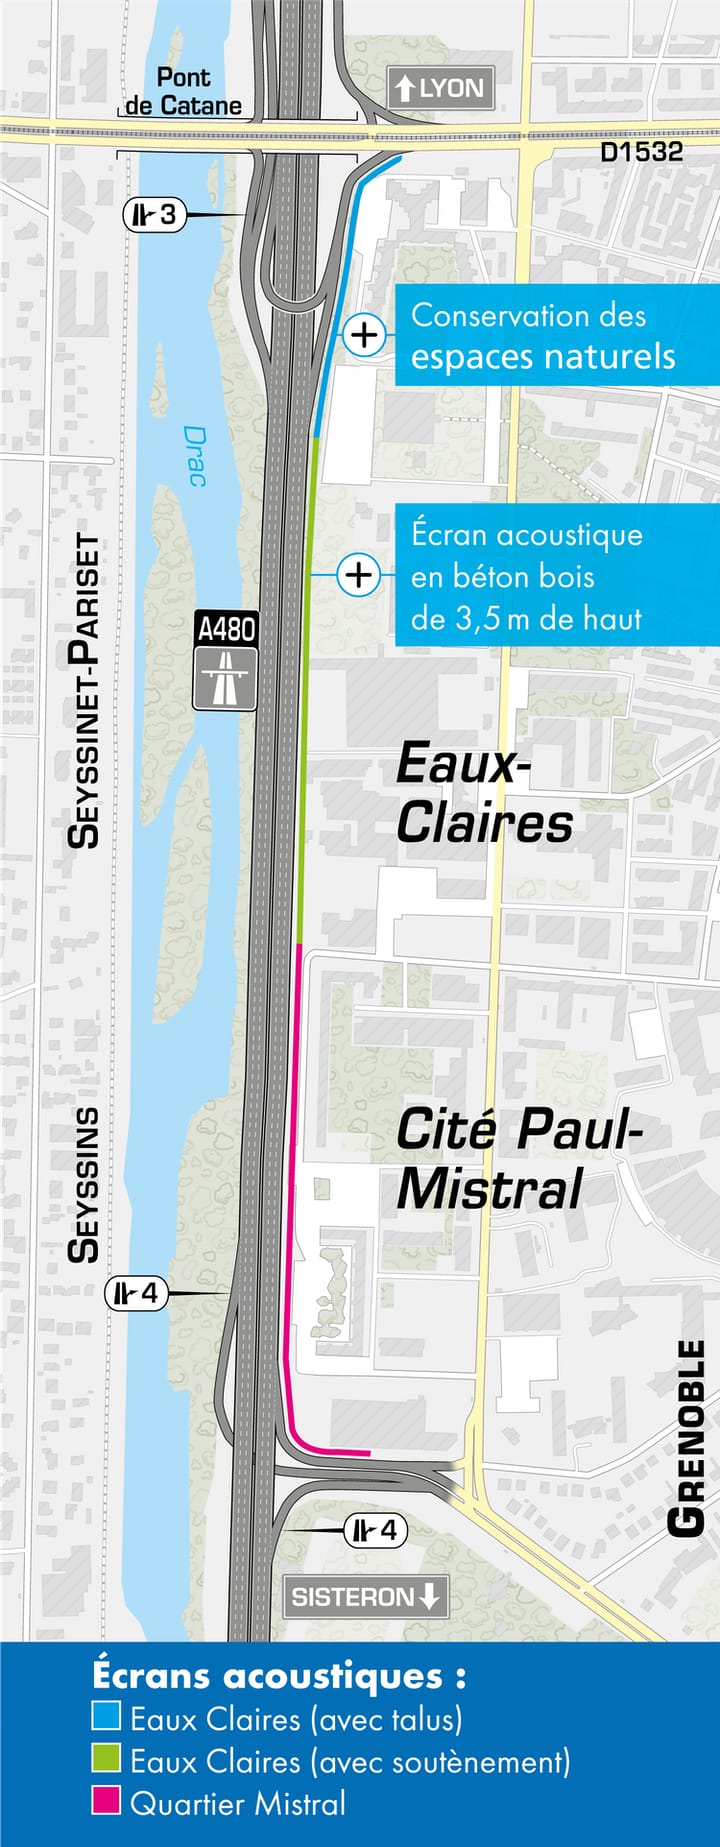 Carte de l'implantation du mur acoustique le long de l'autoroute A480 entre entre Louise Michel et Catane à Grenoble